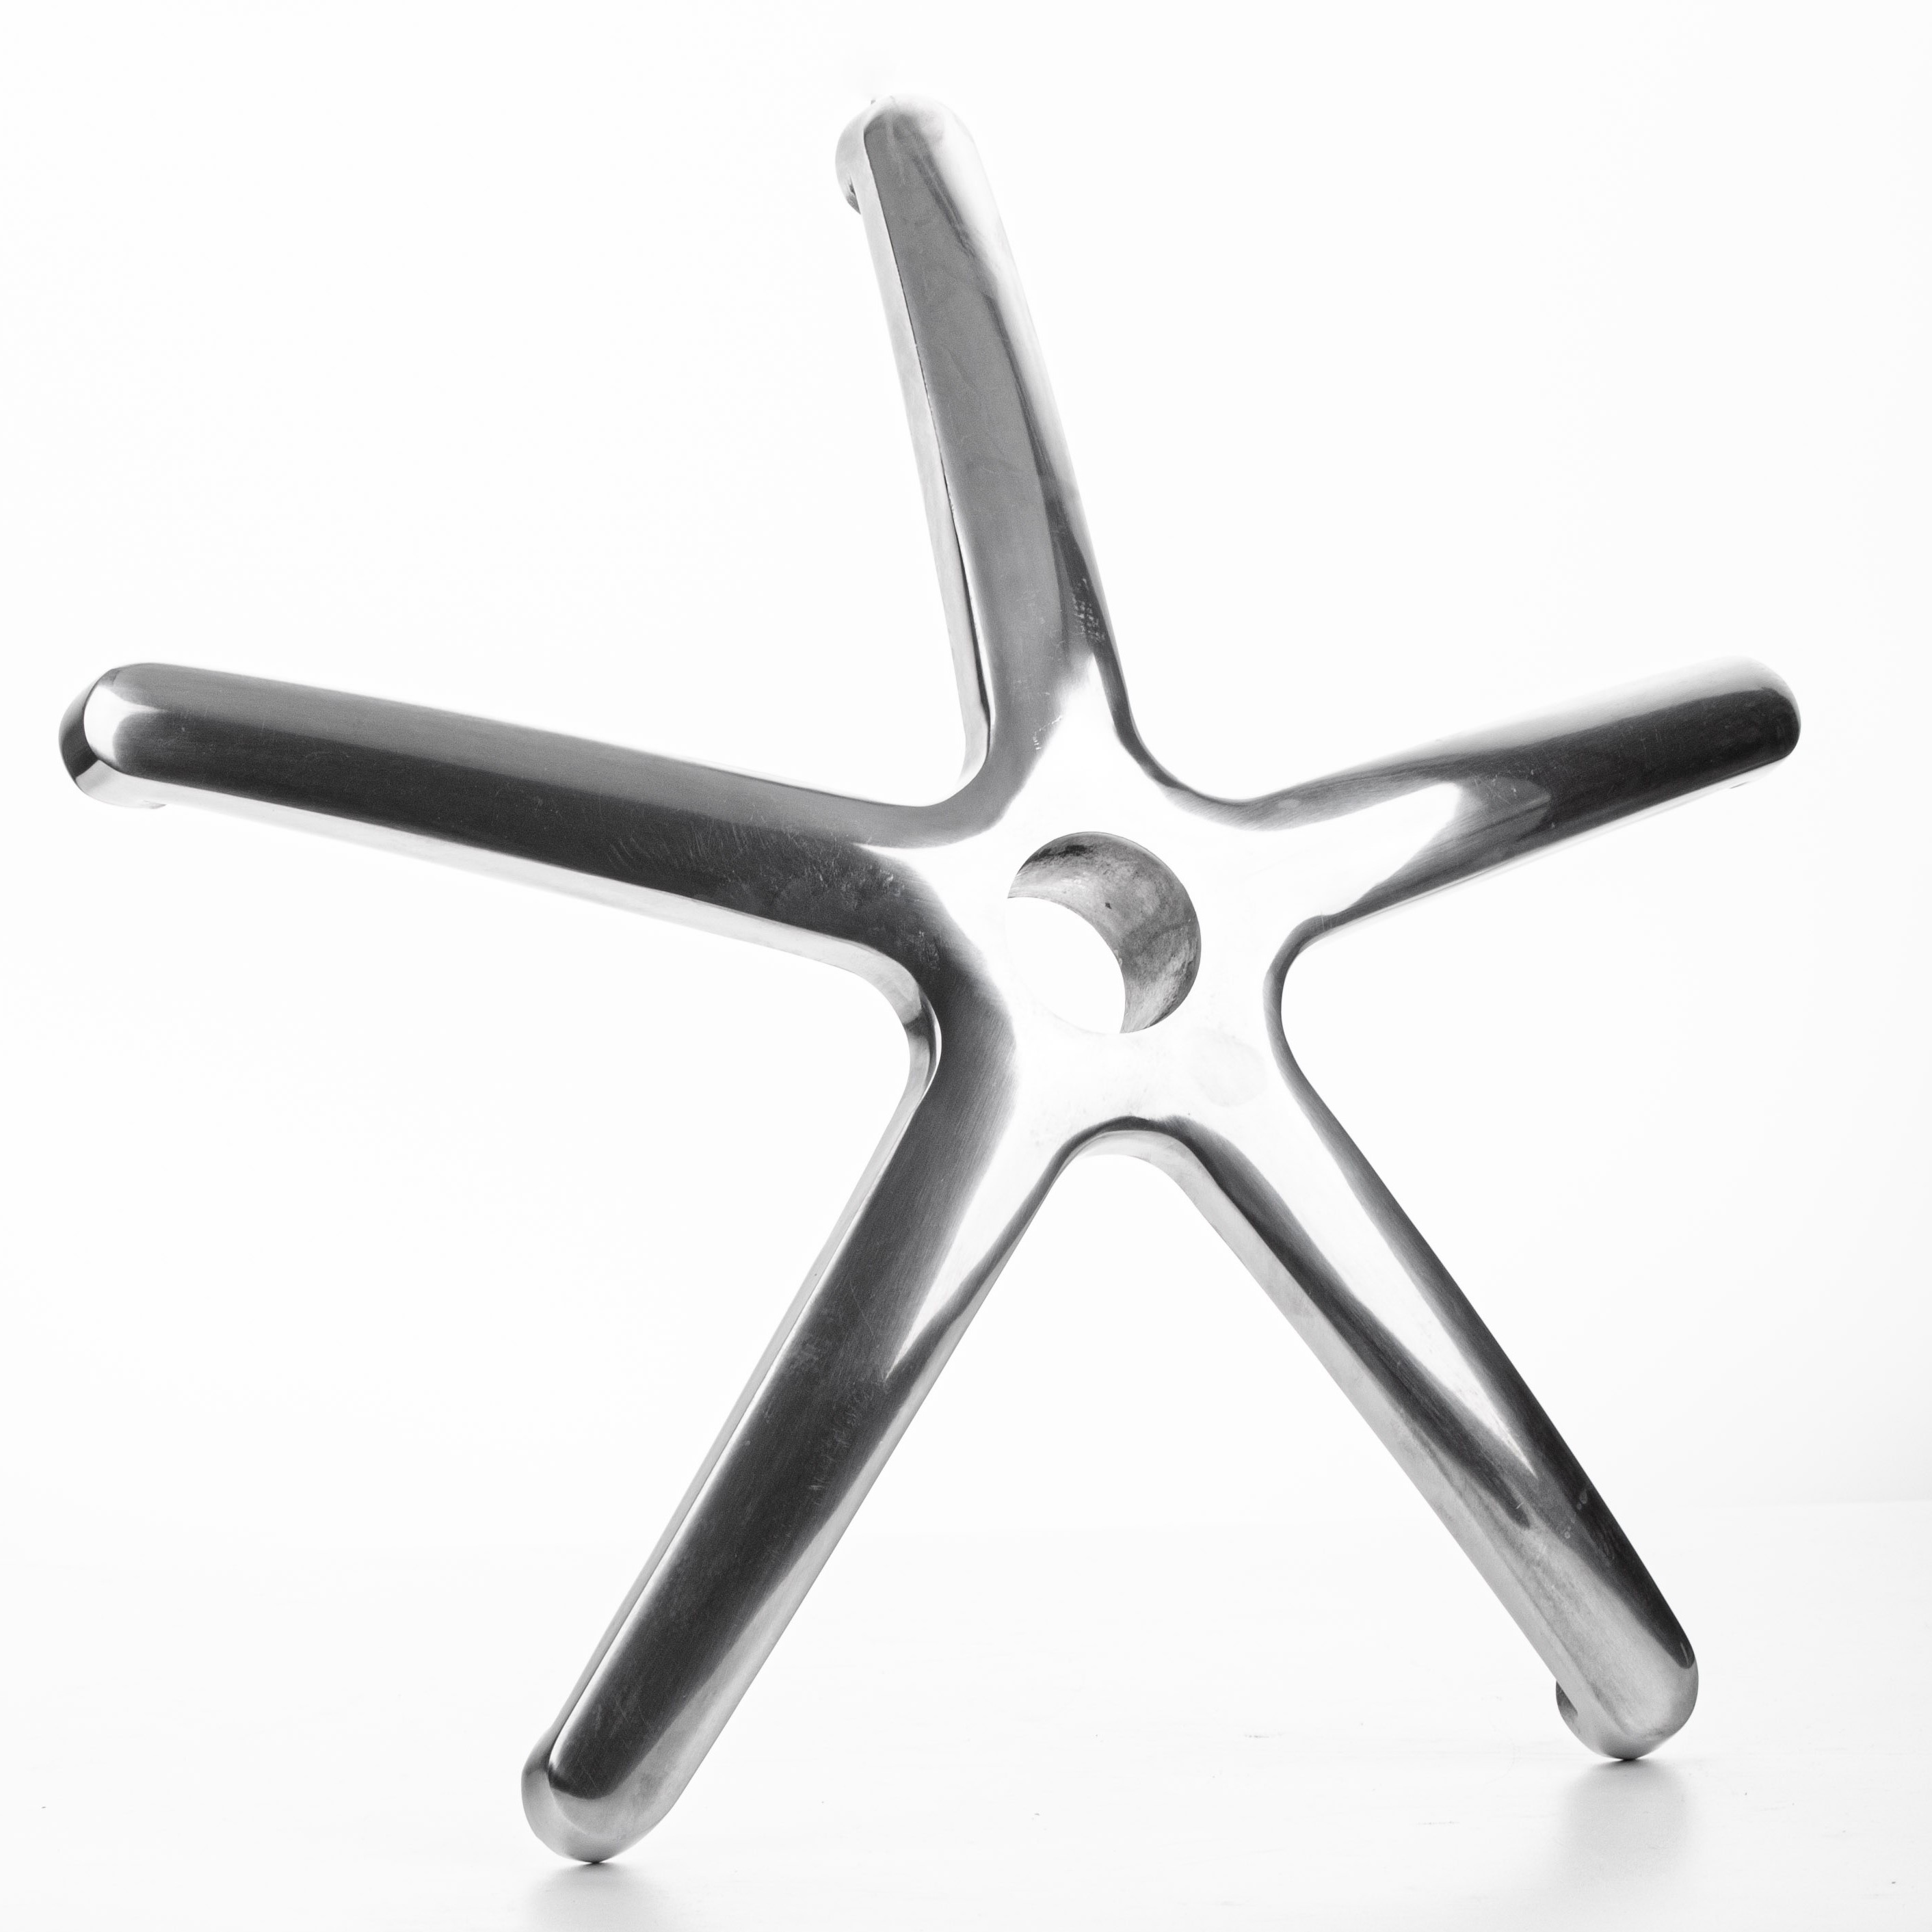 Крестовина для руководительского кресла алюминевая, диаметр 700 мм